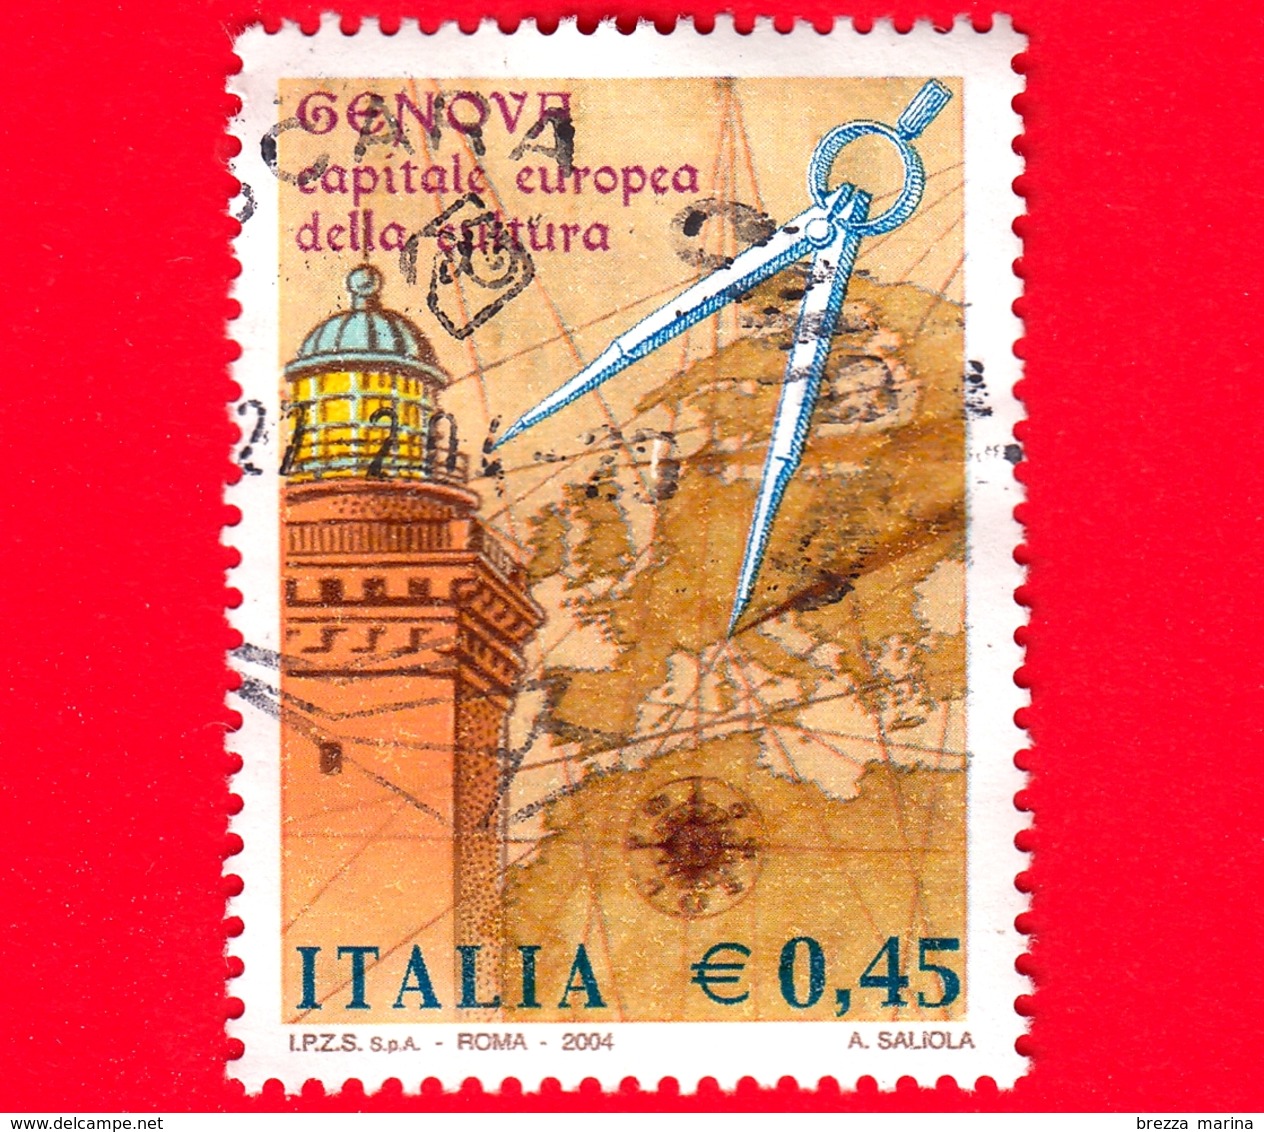 ITALIA - Usato - 2004 - Genova Capitale Europea Della Cultura - Lanterna Di Genova, Mappa E Compasso - 0,45 - 2001-10: Usati